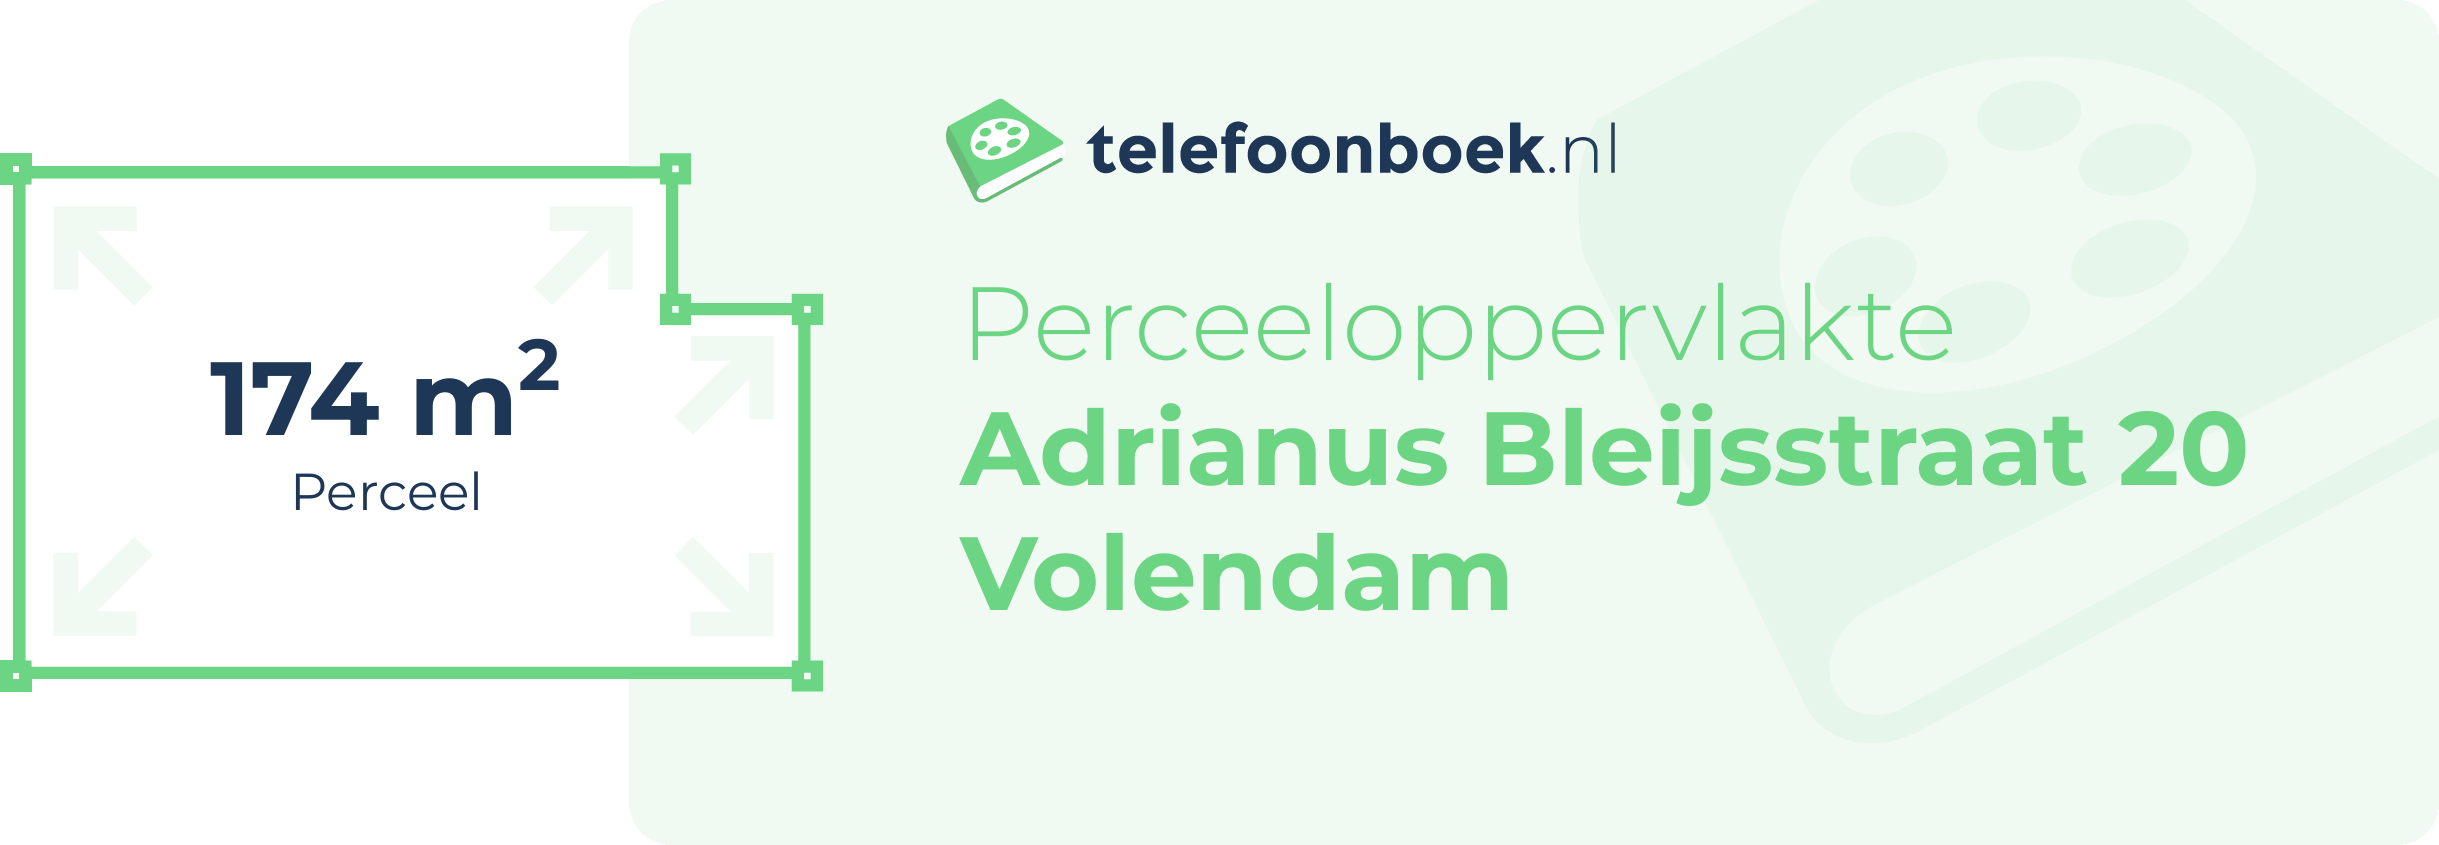 Perceeloppervlakte Adrianus Bleijsstraat 20 Volendam